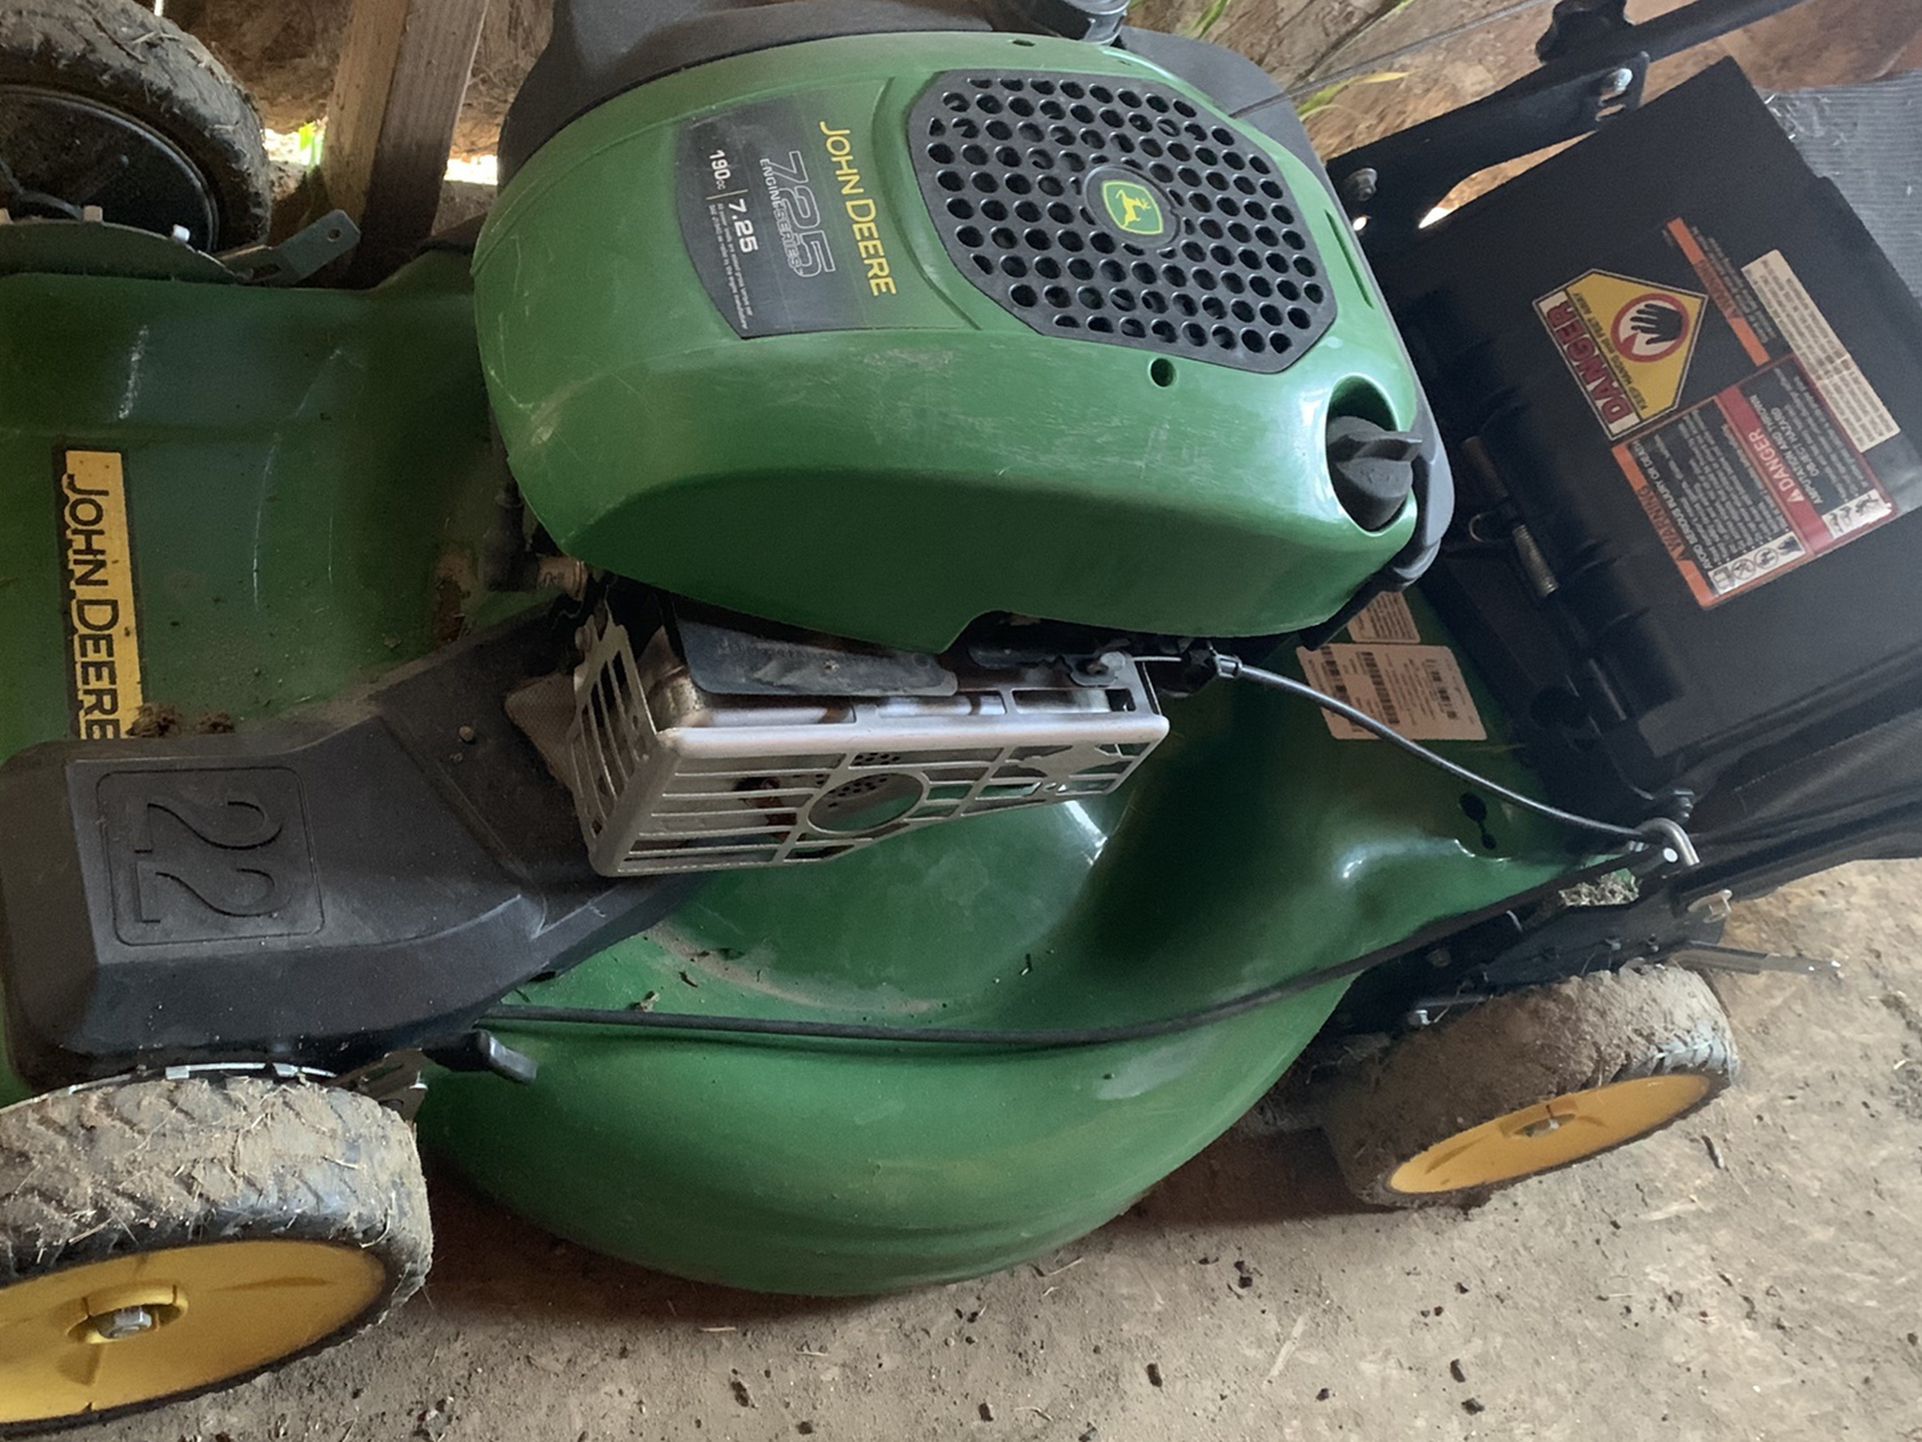 John Deere Self Propelled Lawnmower